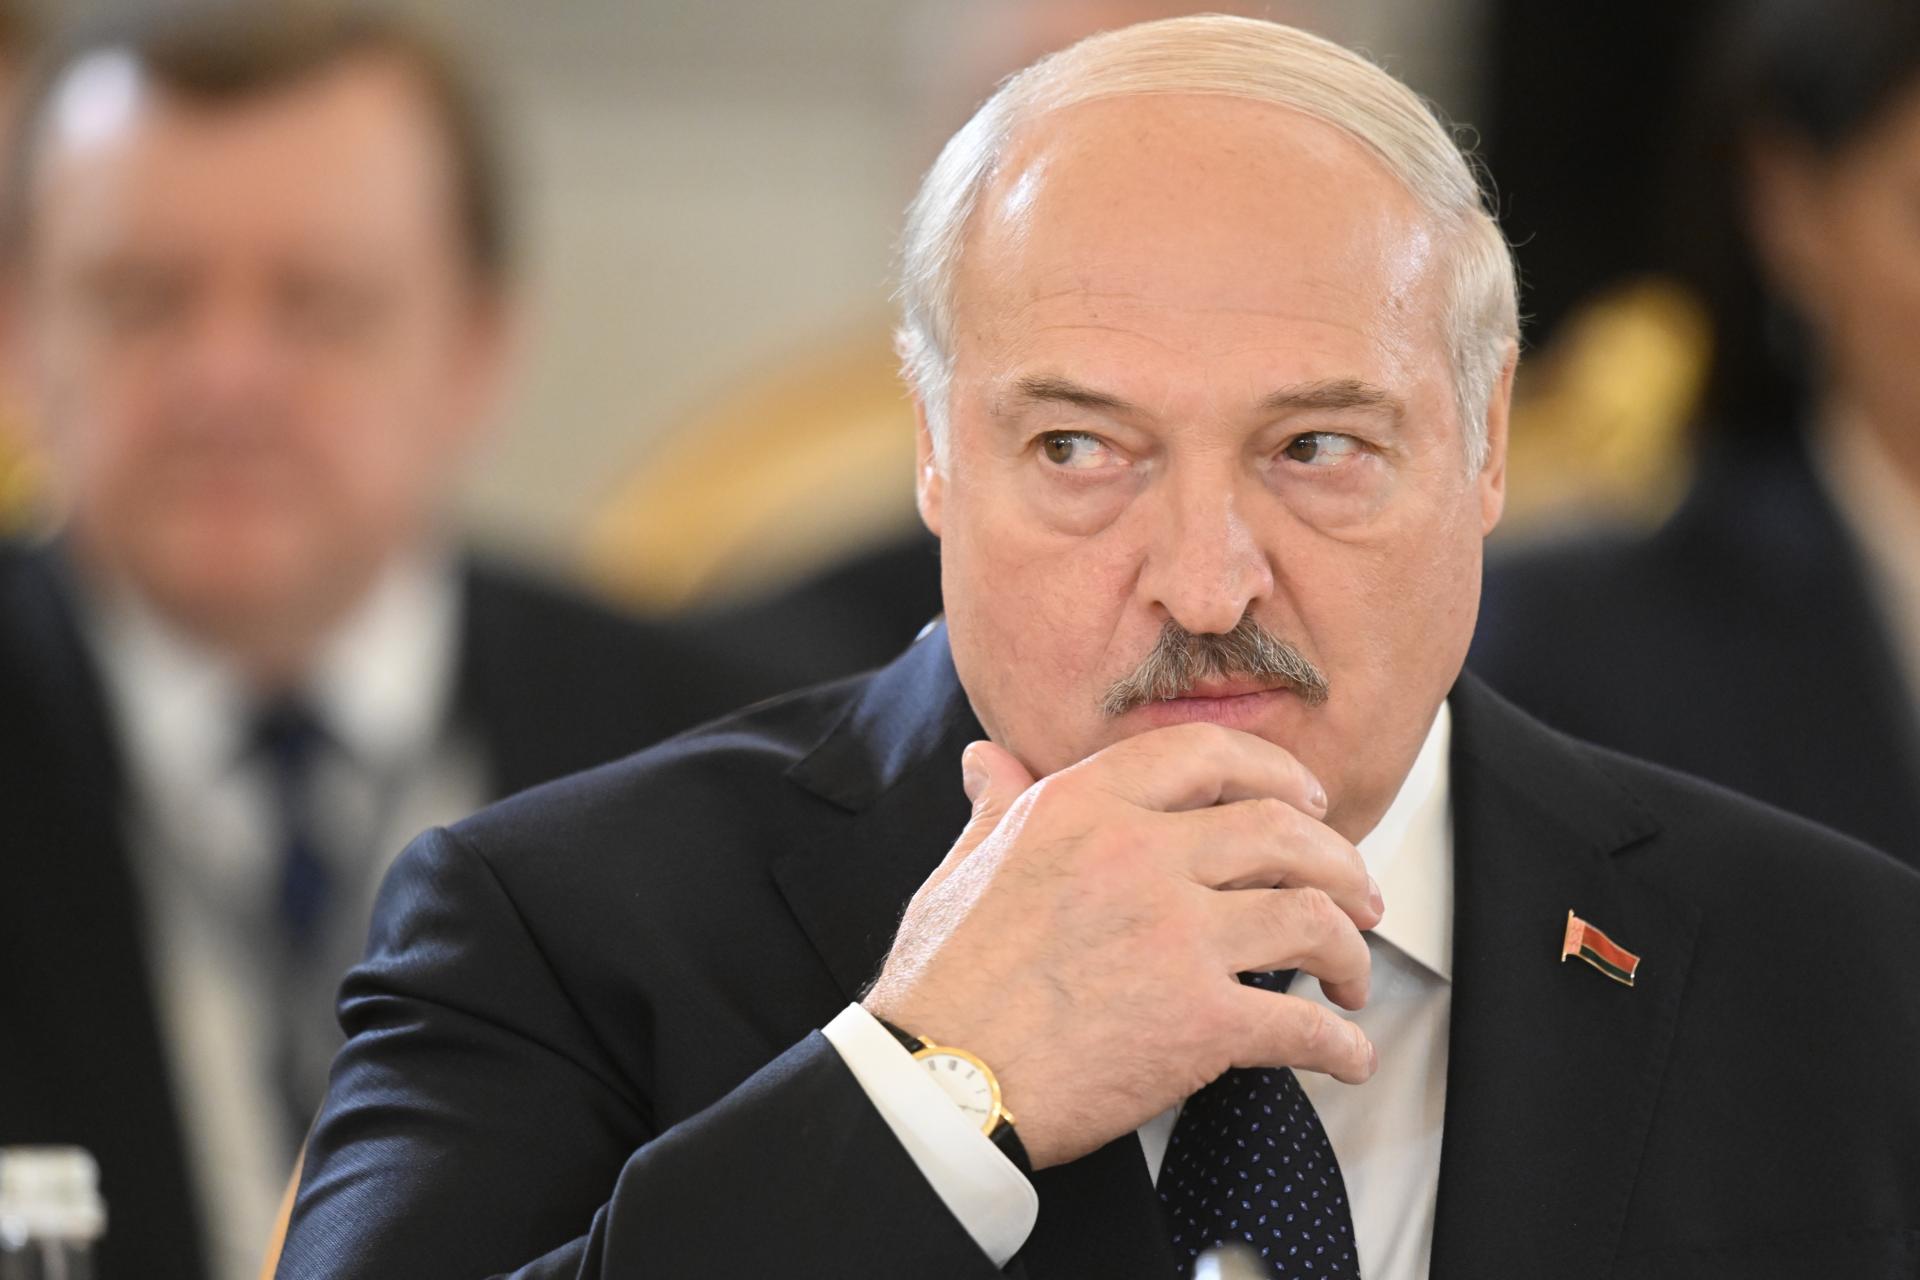 Lukašenko omilostil Rusku Sapegovú zadržanú s jej priateľom a novinárom Pratasevičom